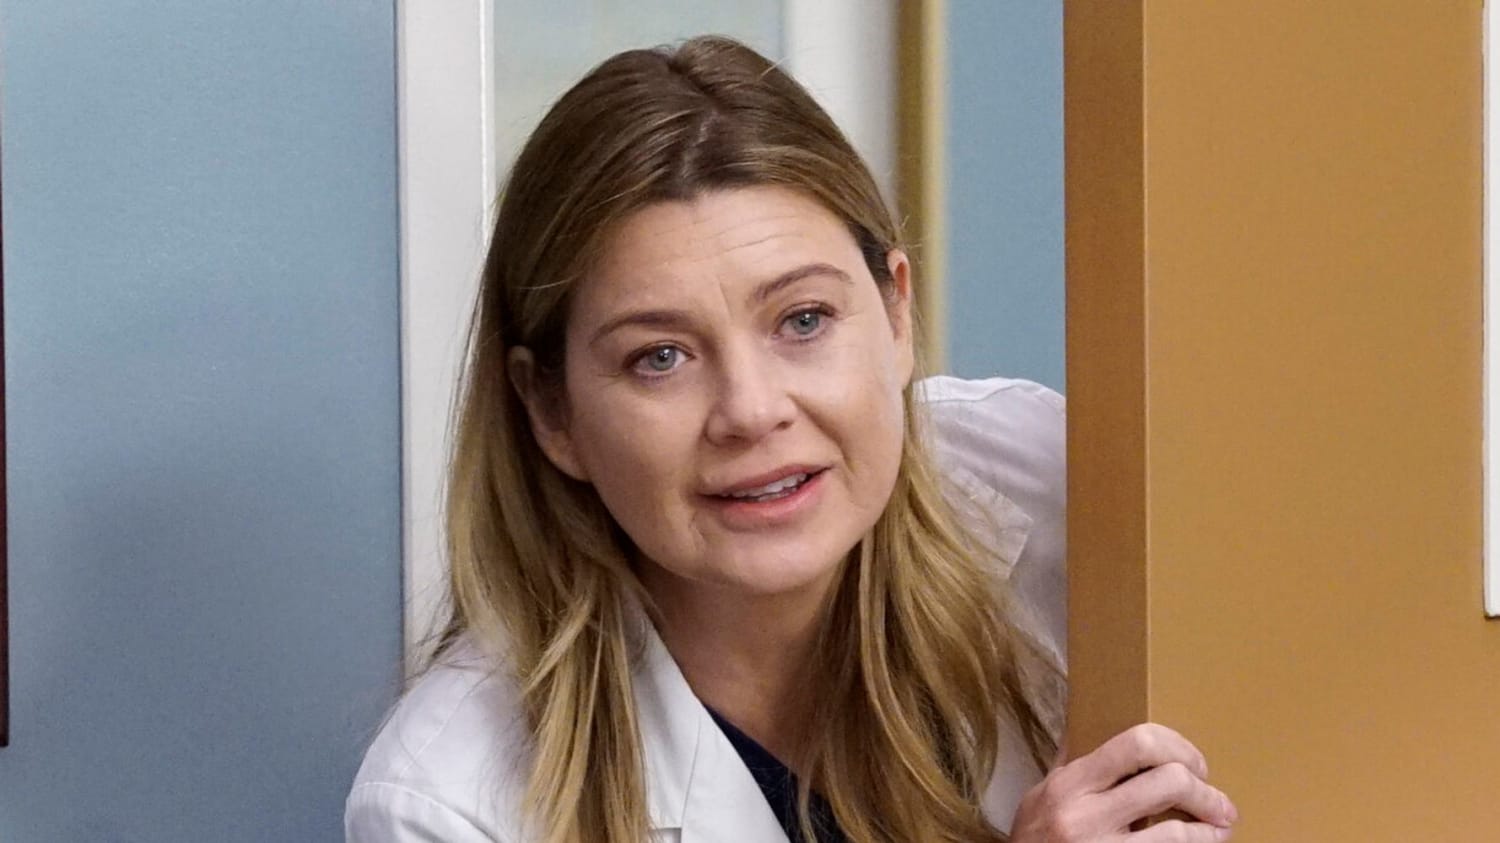 Ellen Pompeo Has Great Response After 'Grey's Anatomy' Viewer Calls Season 17 'Trash'